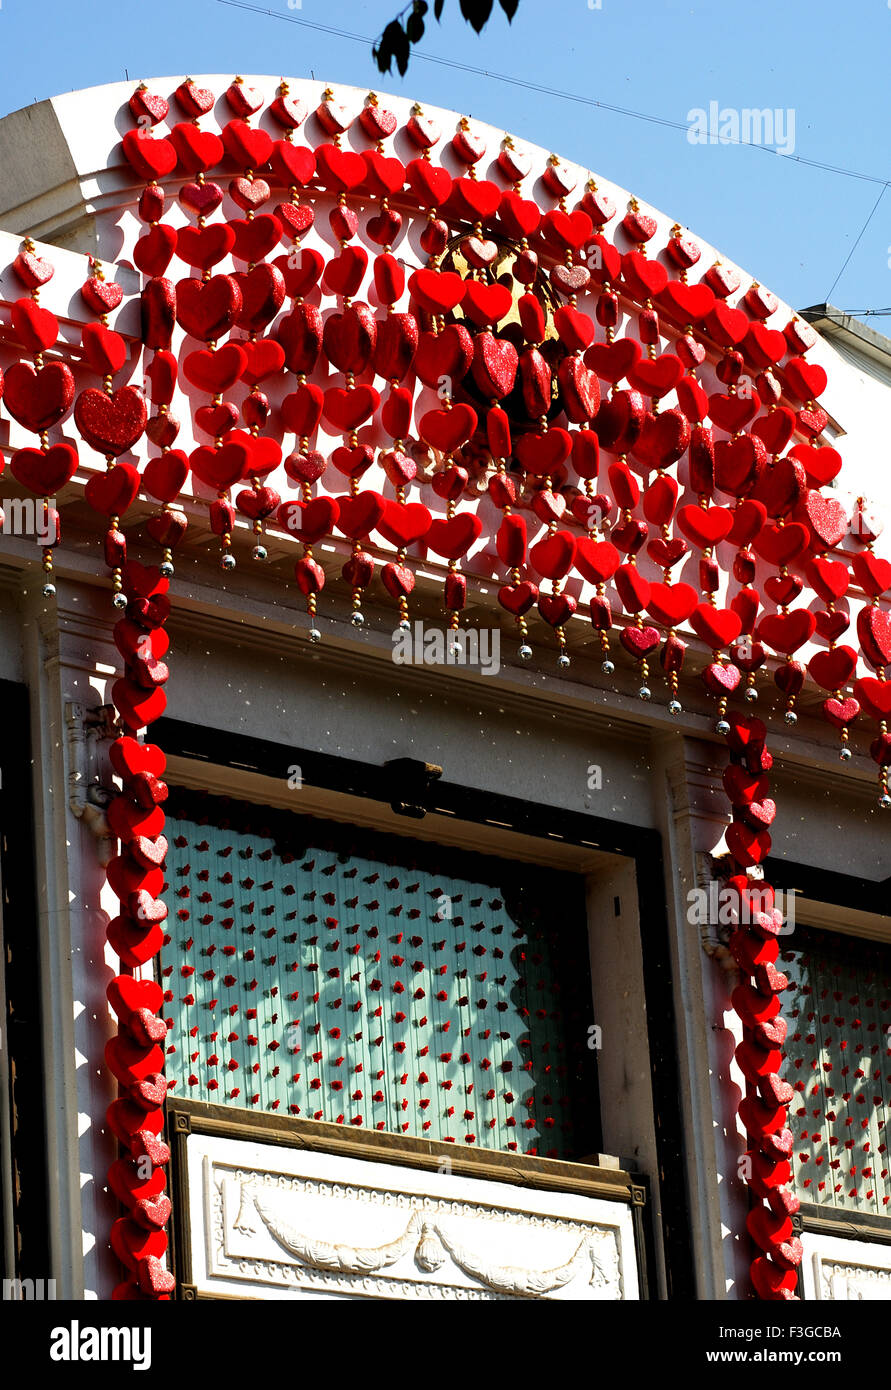 Saint-valentin décoration avec des ballons en forme de coeur Banque D'Images